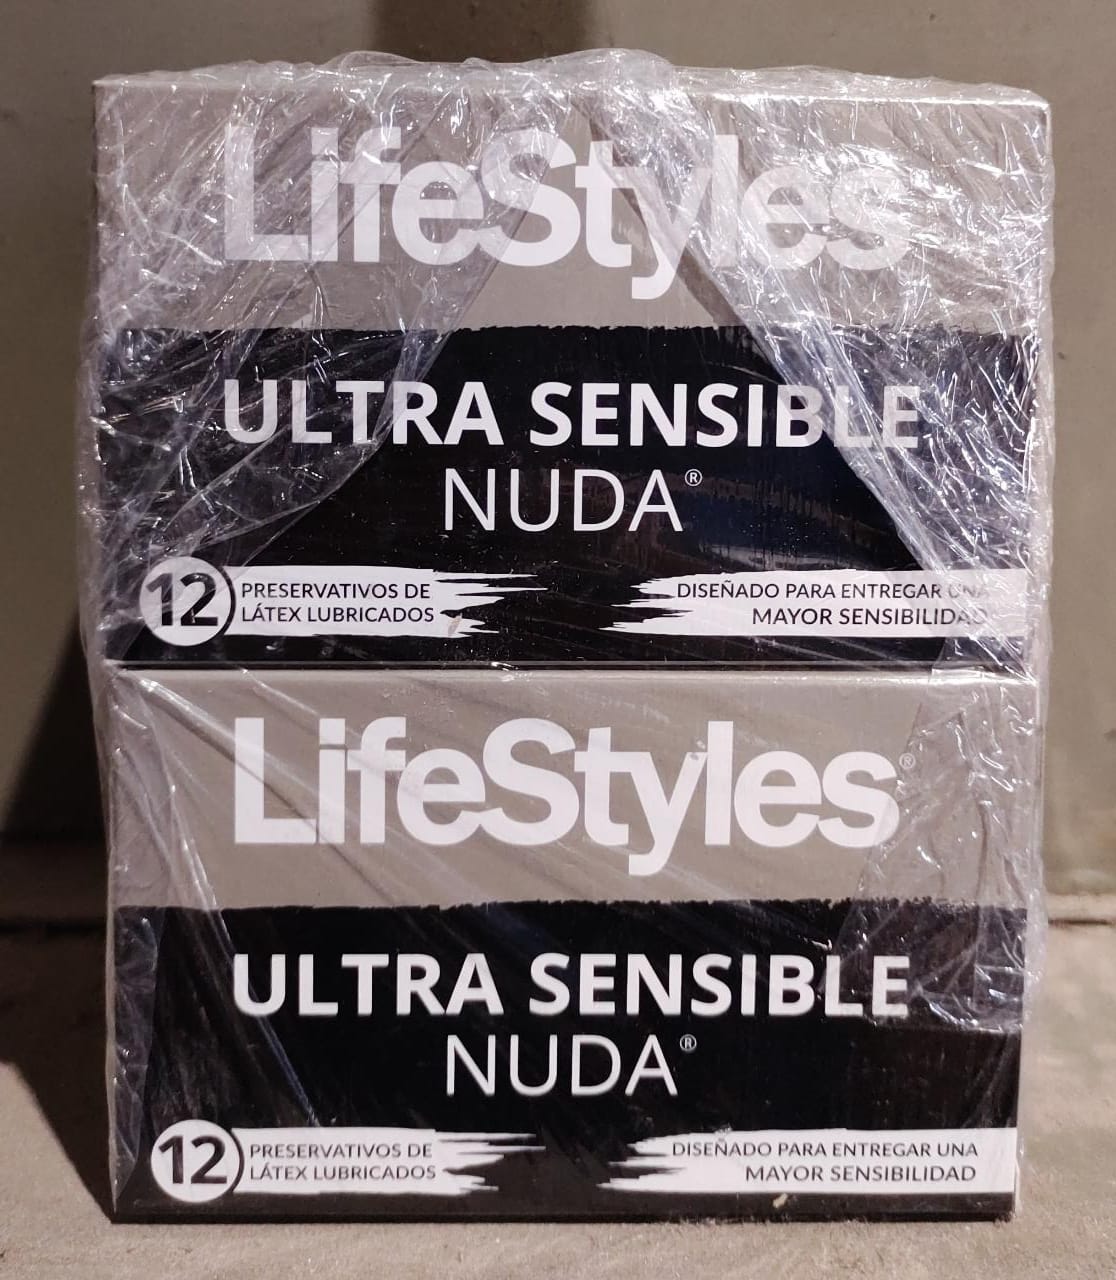 Pack de 4 cajas de 12 preservativos nuda lifestyles